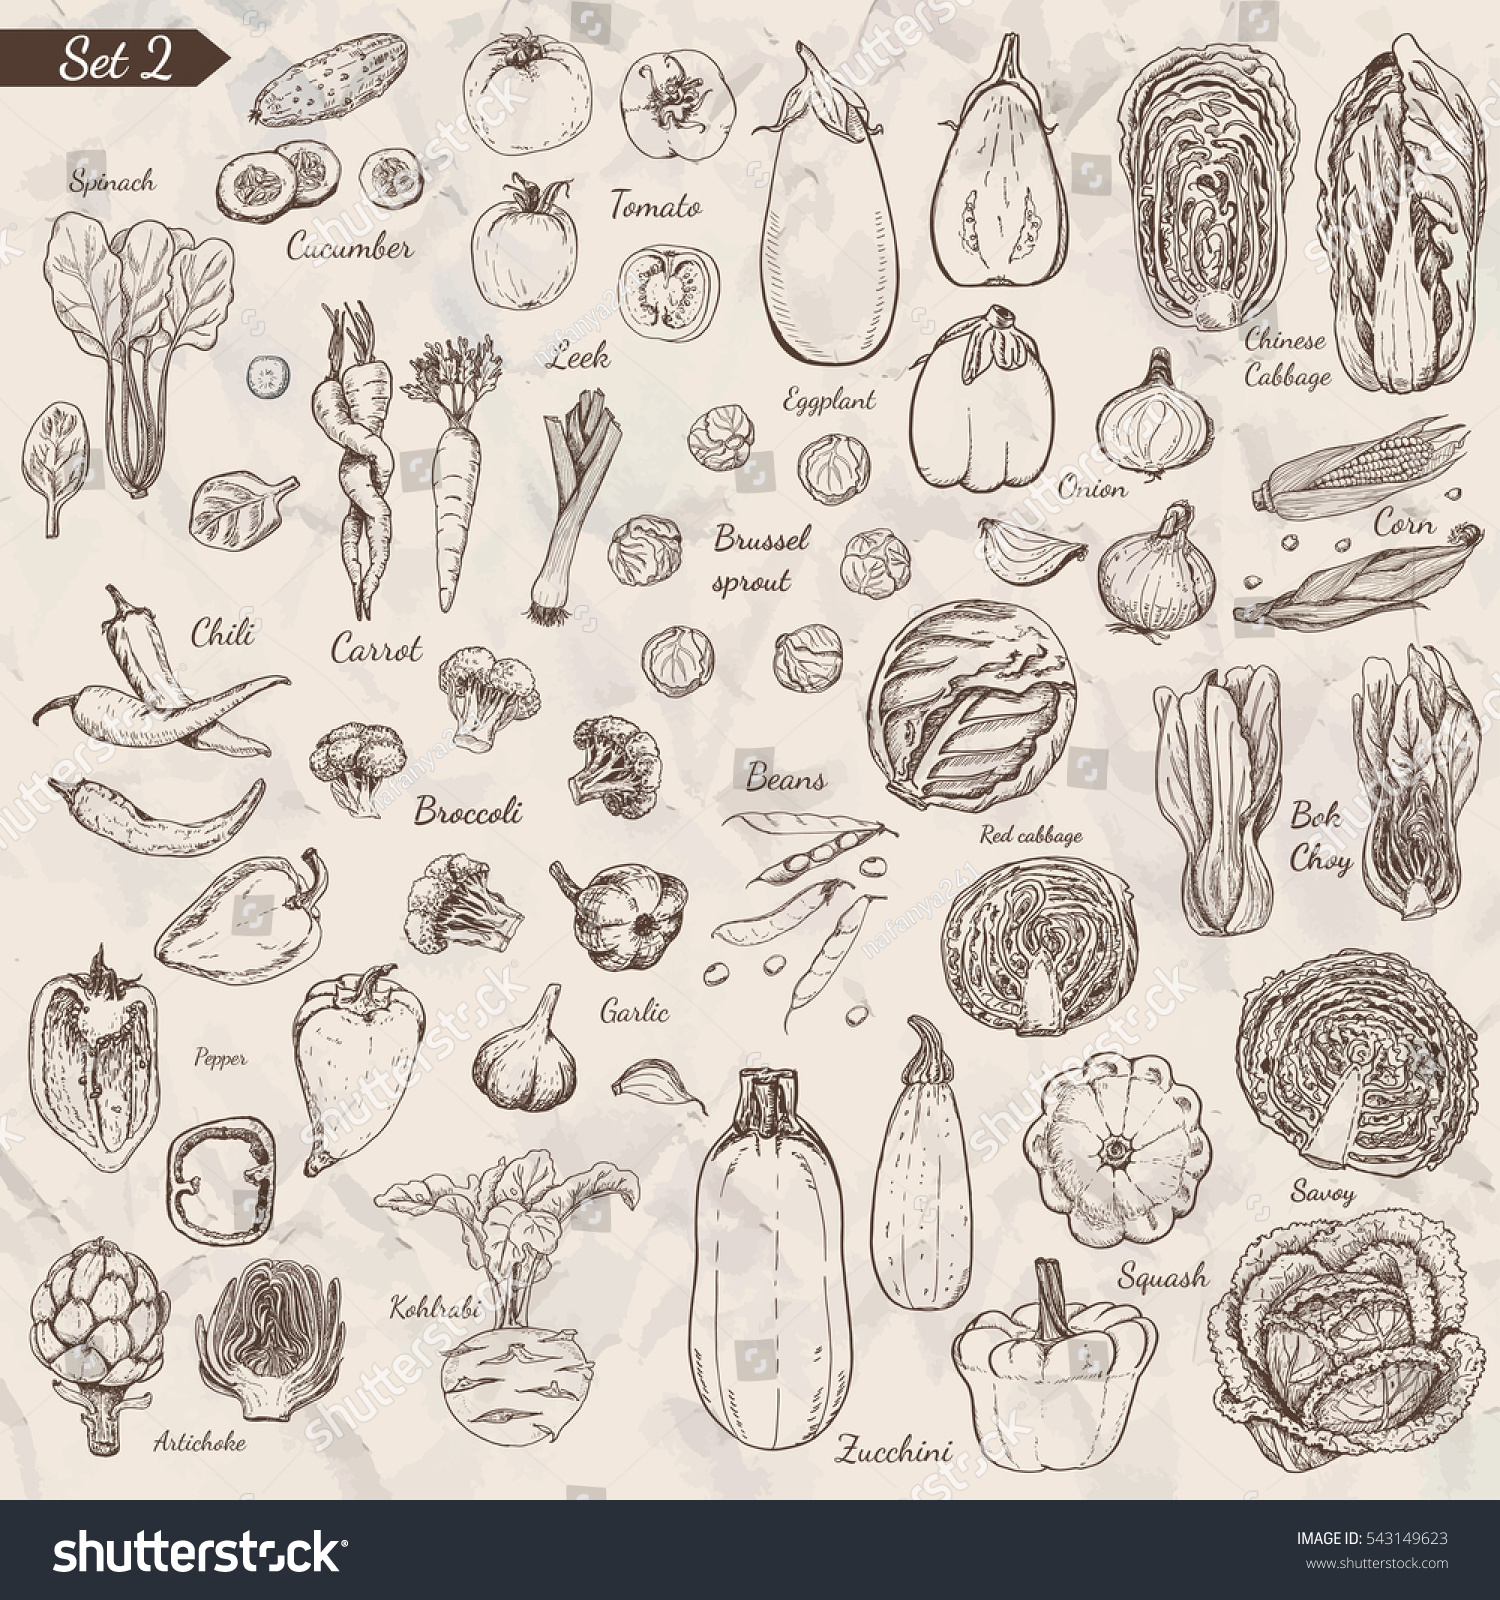 Big set of vegetables in sketch style. Vector illustration for your design #543149623